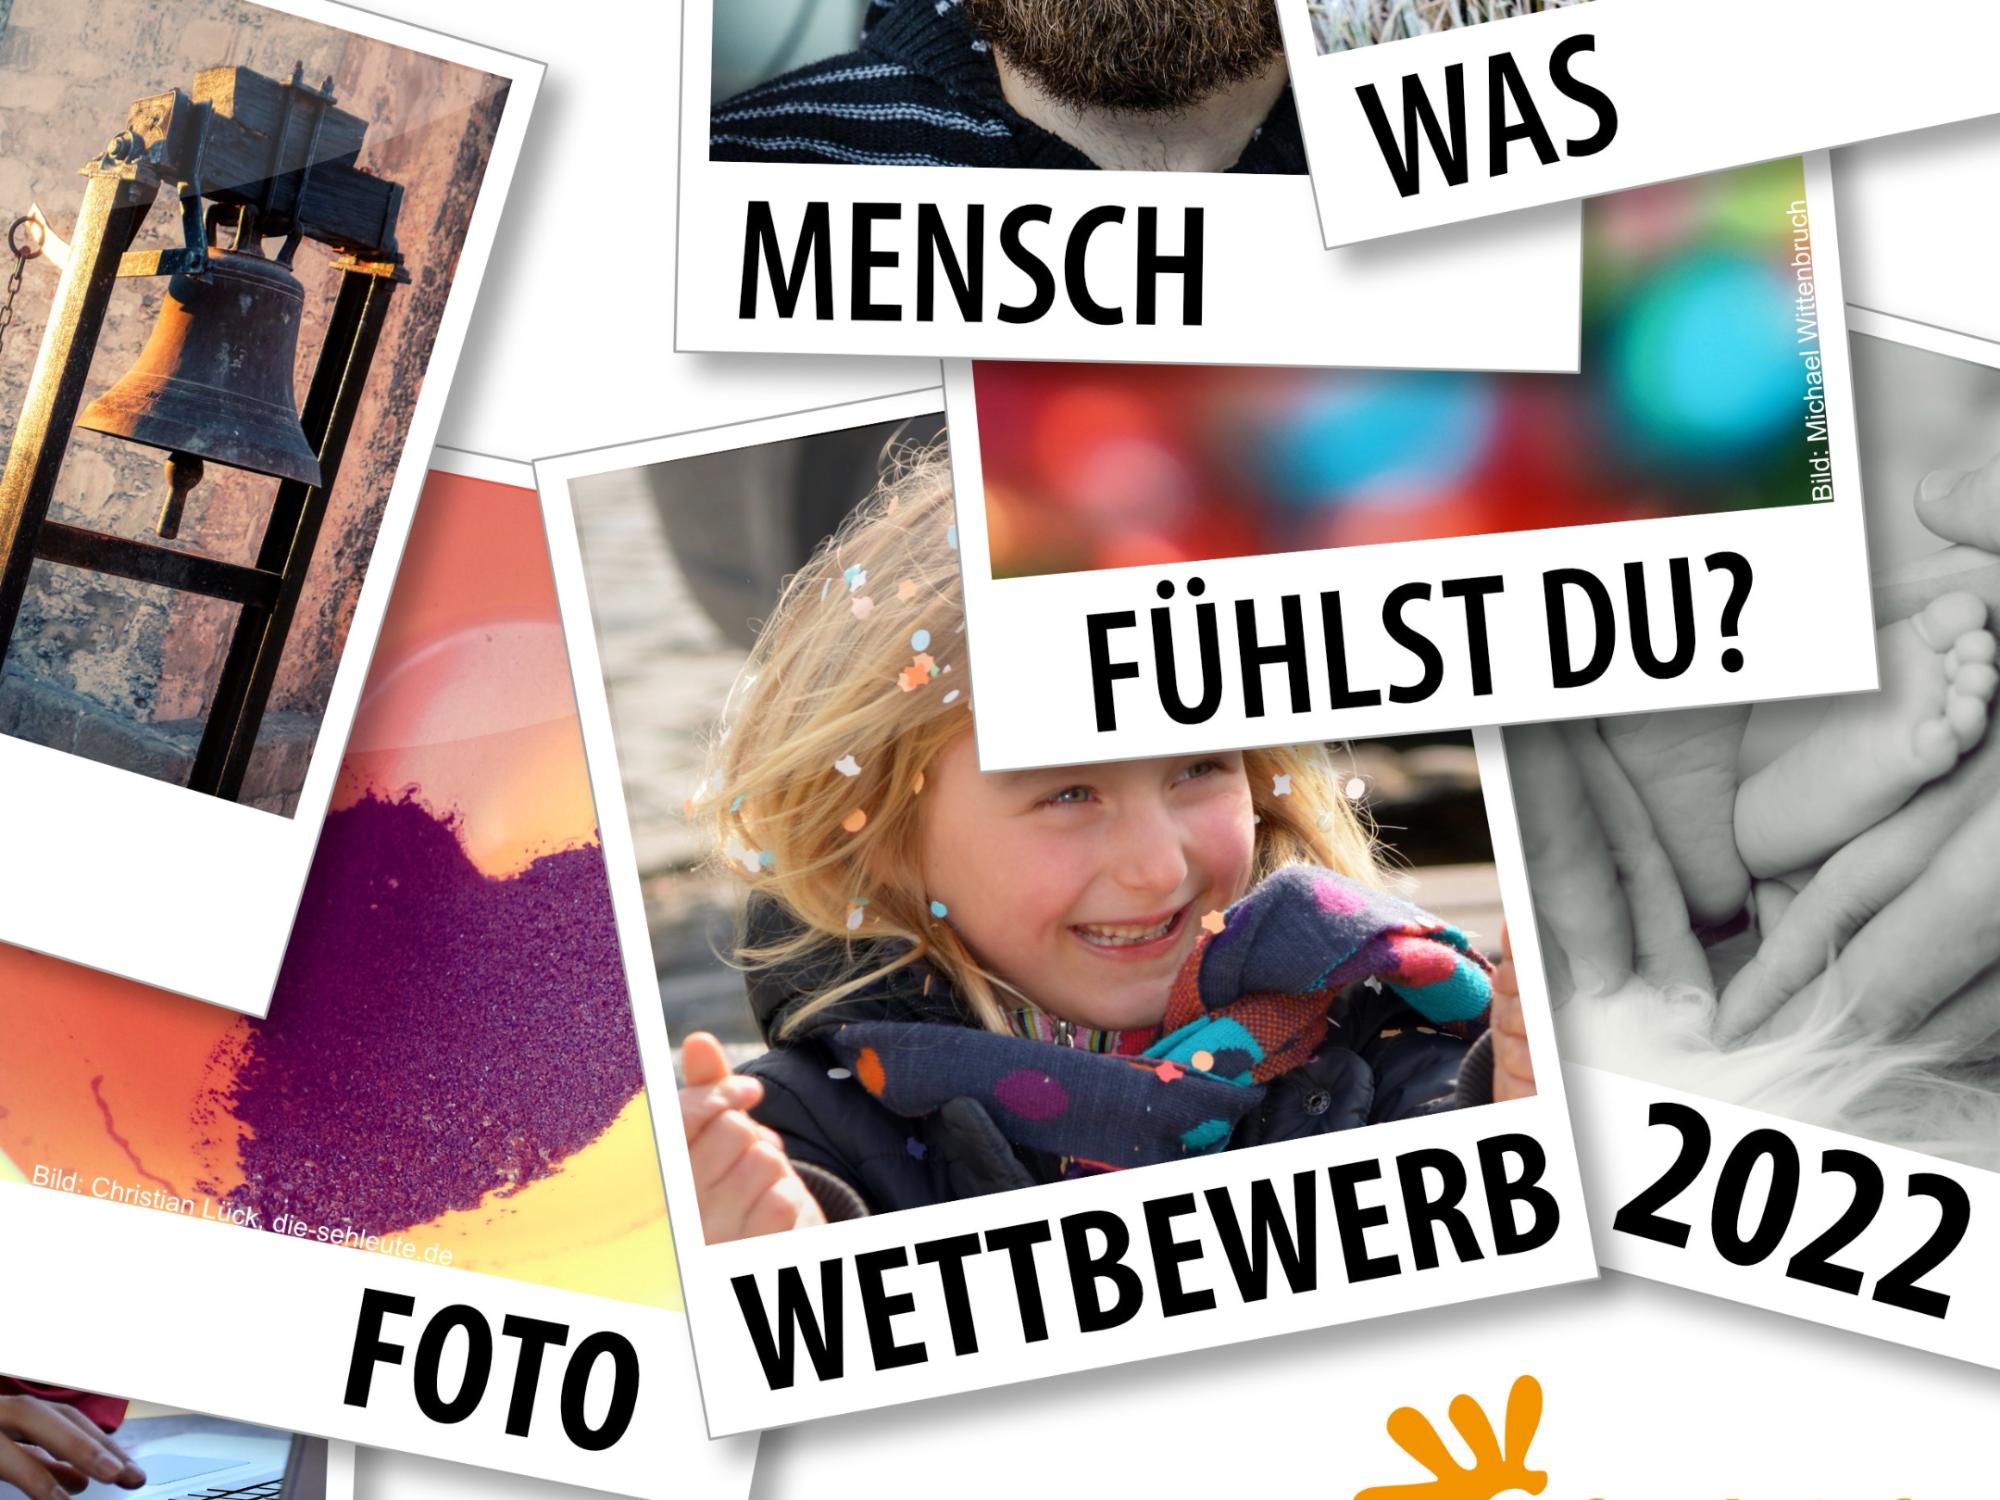 Pfarrbriefservice.de feiert 20. Geburtstag und schreibt Fotowettbewerb aus (c) Pfarrbriefservice